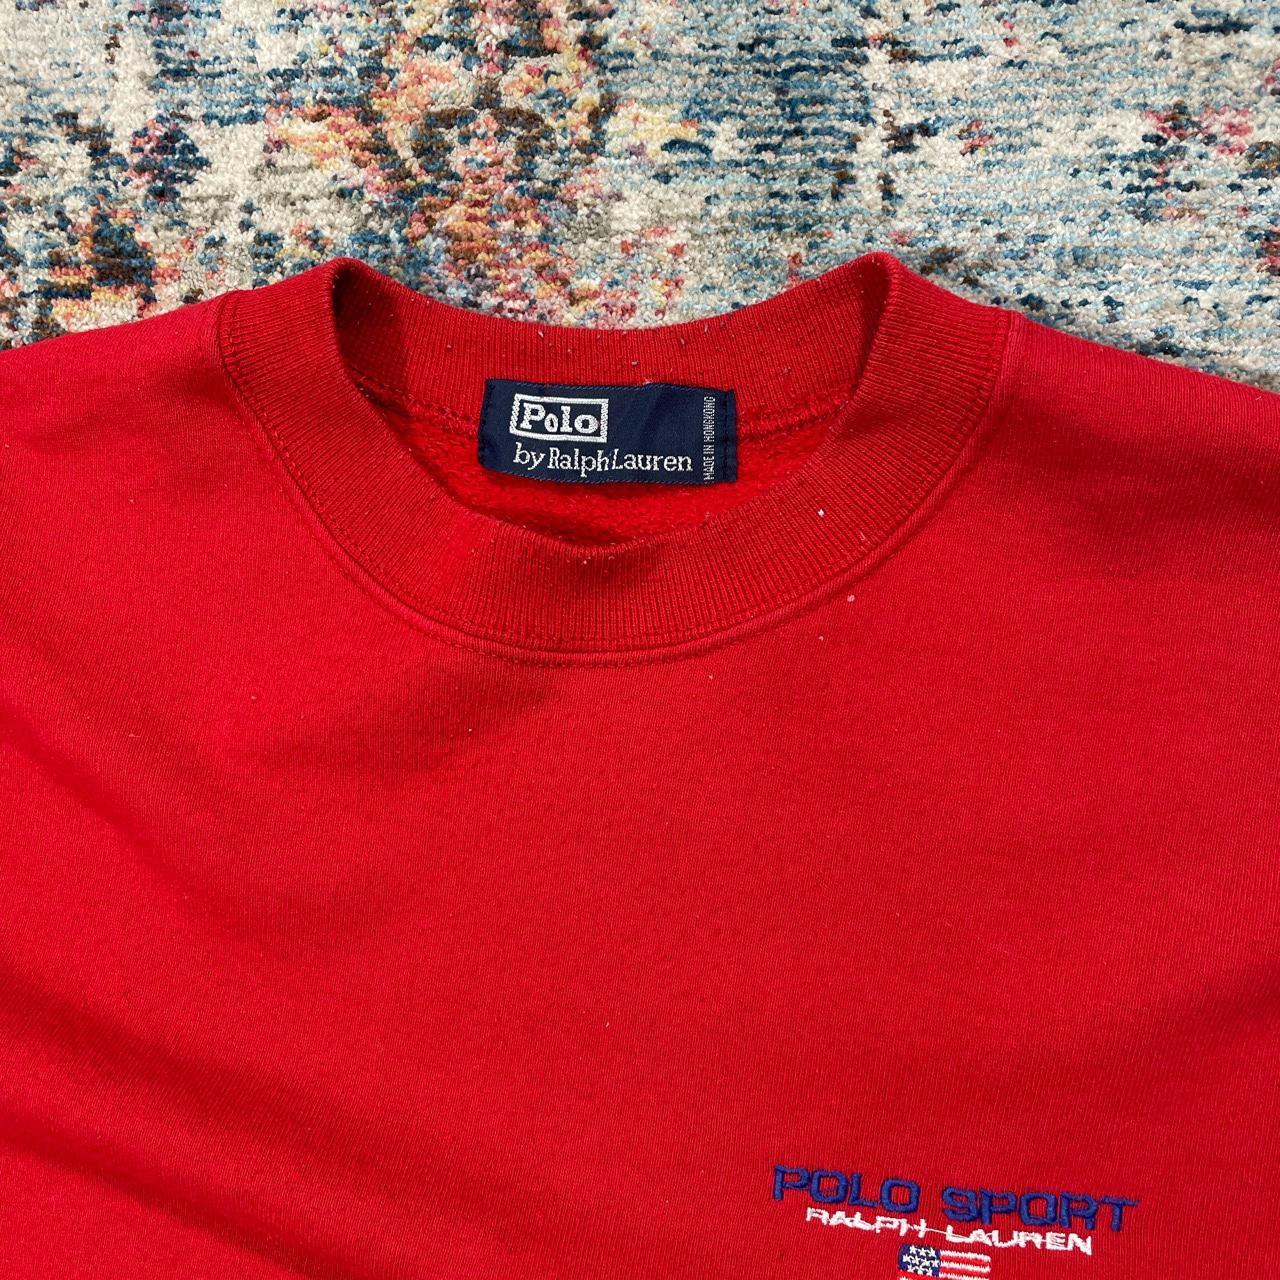 Vintage Ralph Lauren Red Sweatshirt